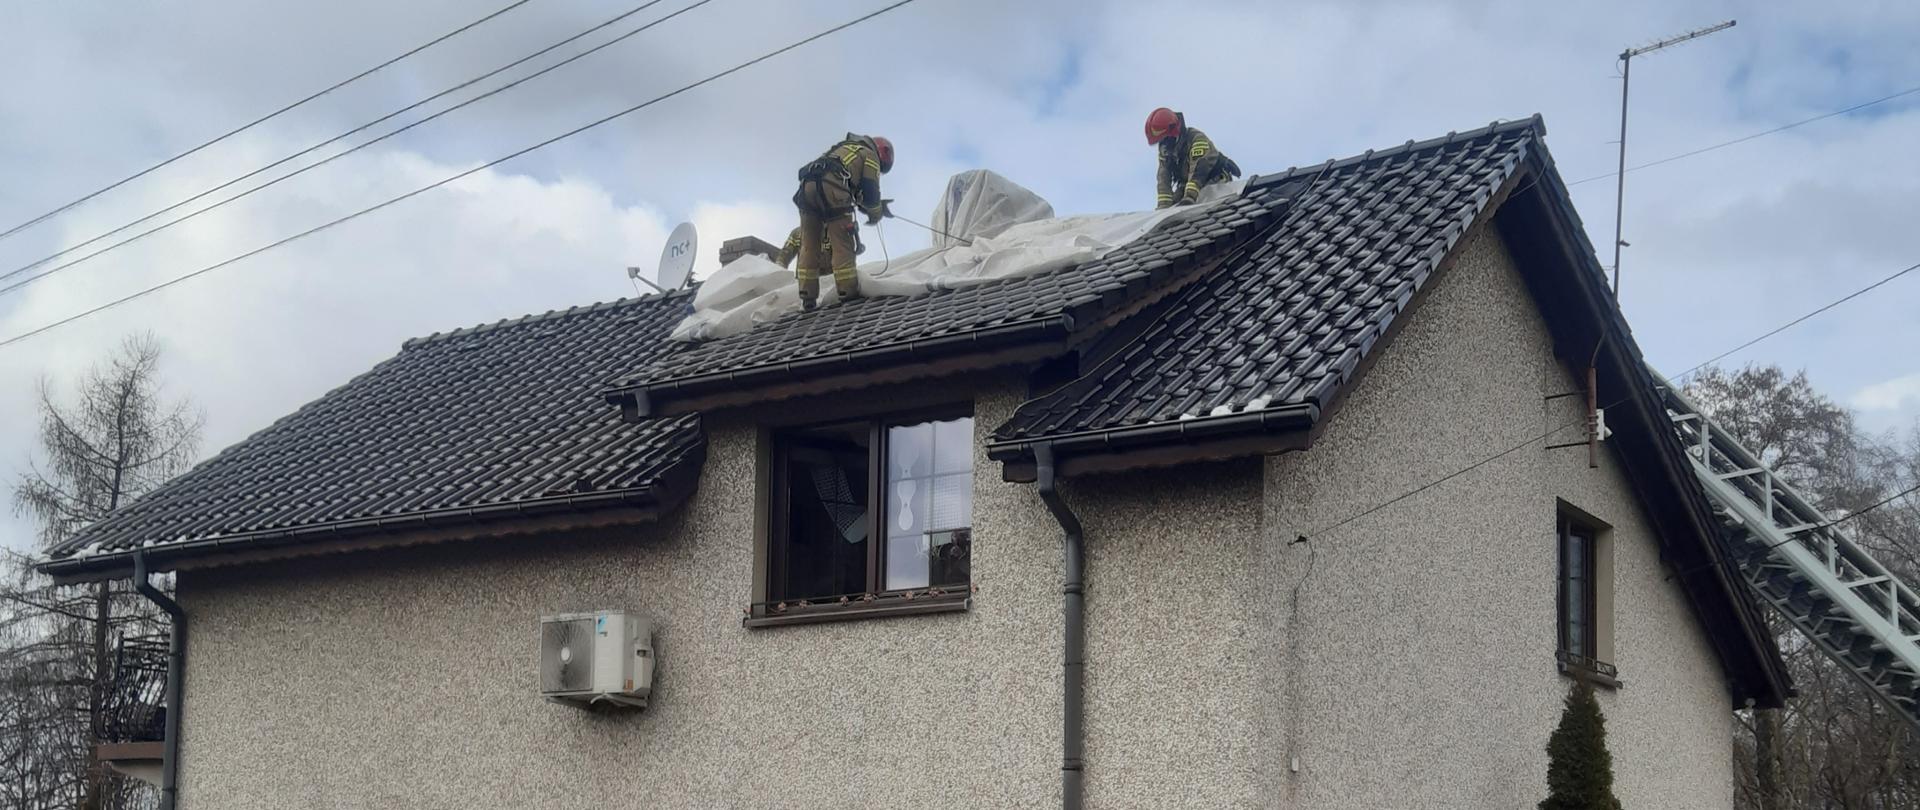 zabezpieczenie dachu folią po pożarze